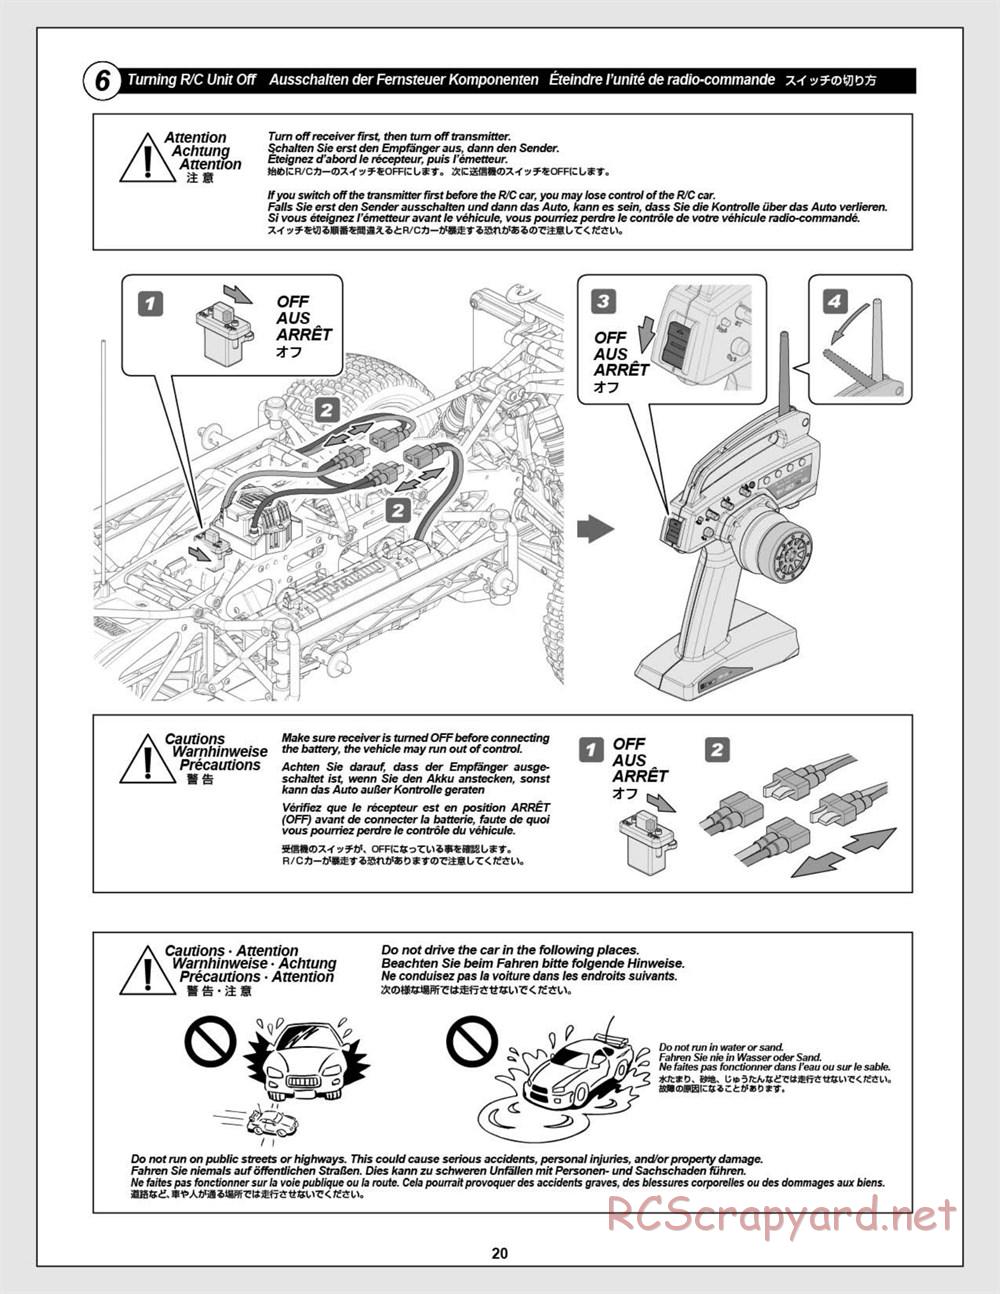 HPI - Super 5SC Flux - Manual - Page 20